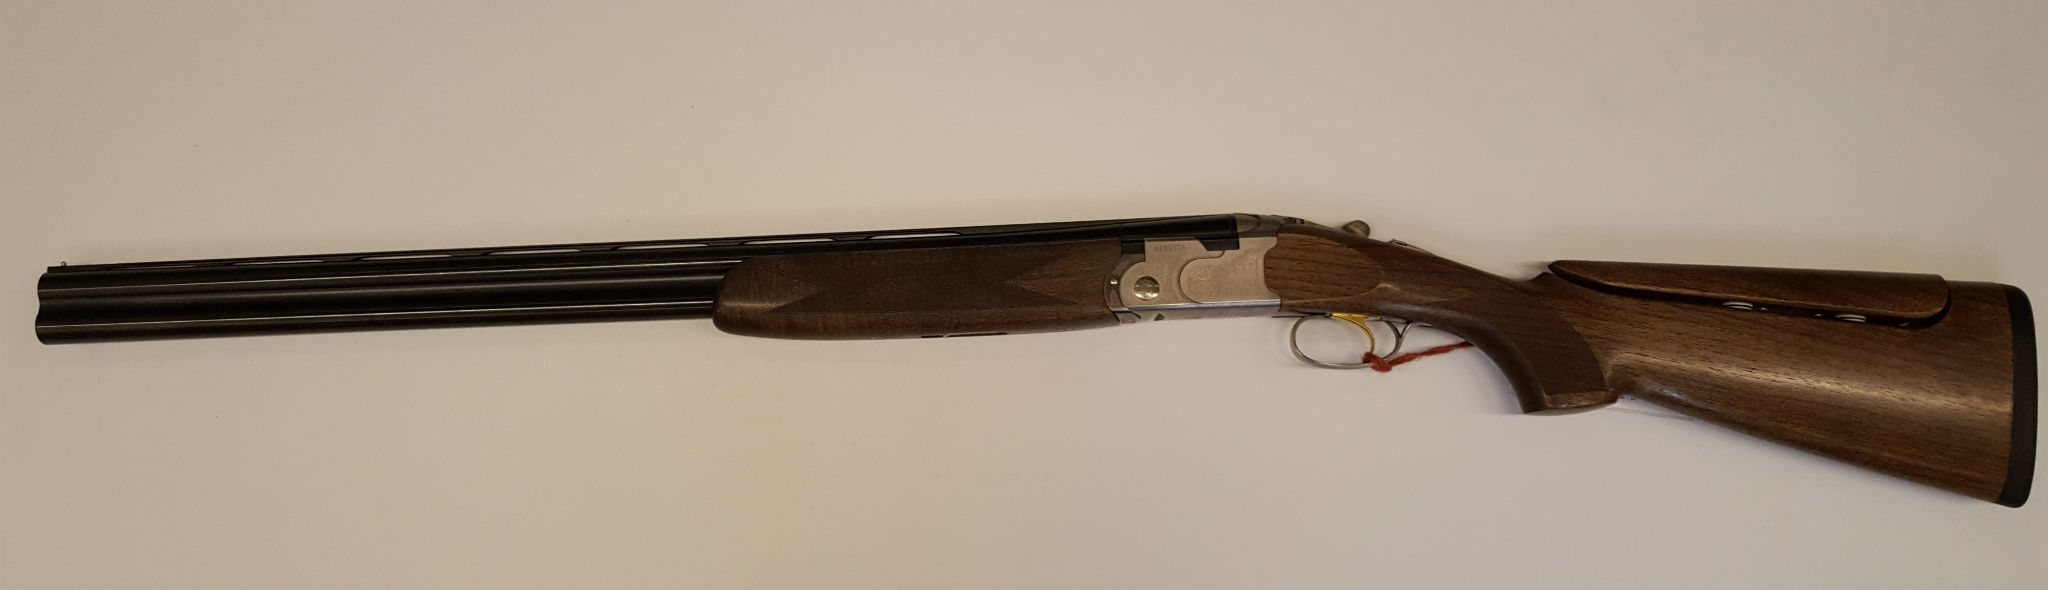 Beretta 686 SP1 Adj